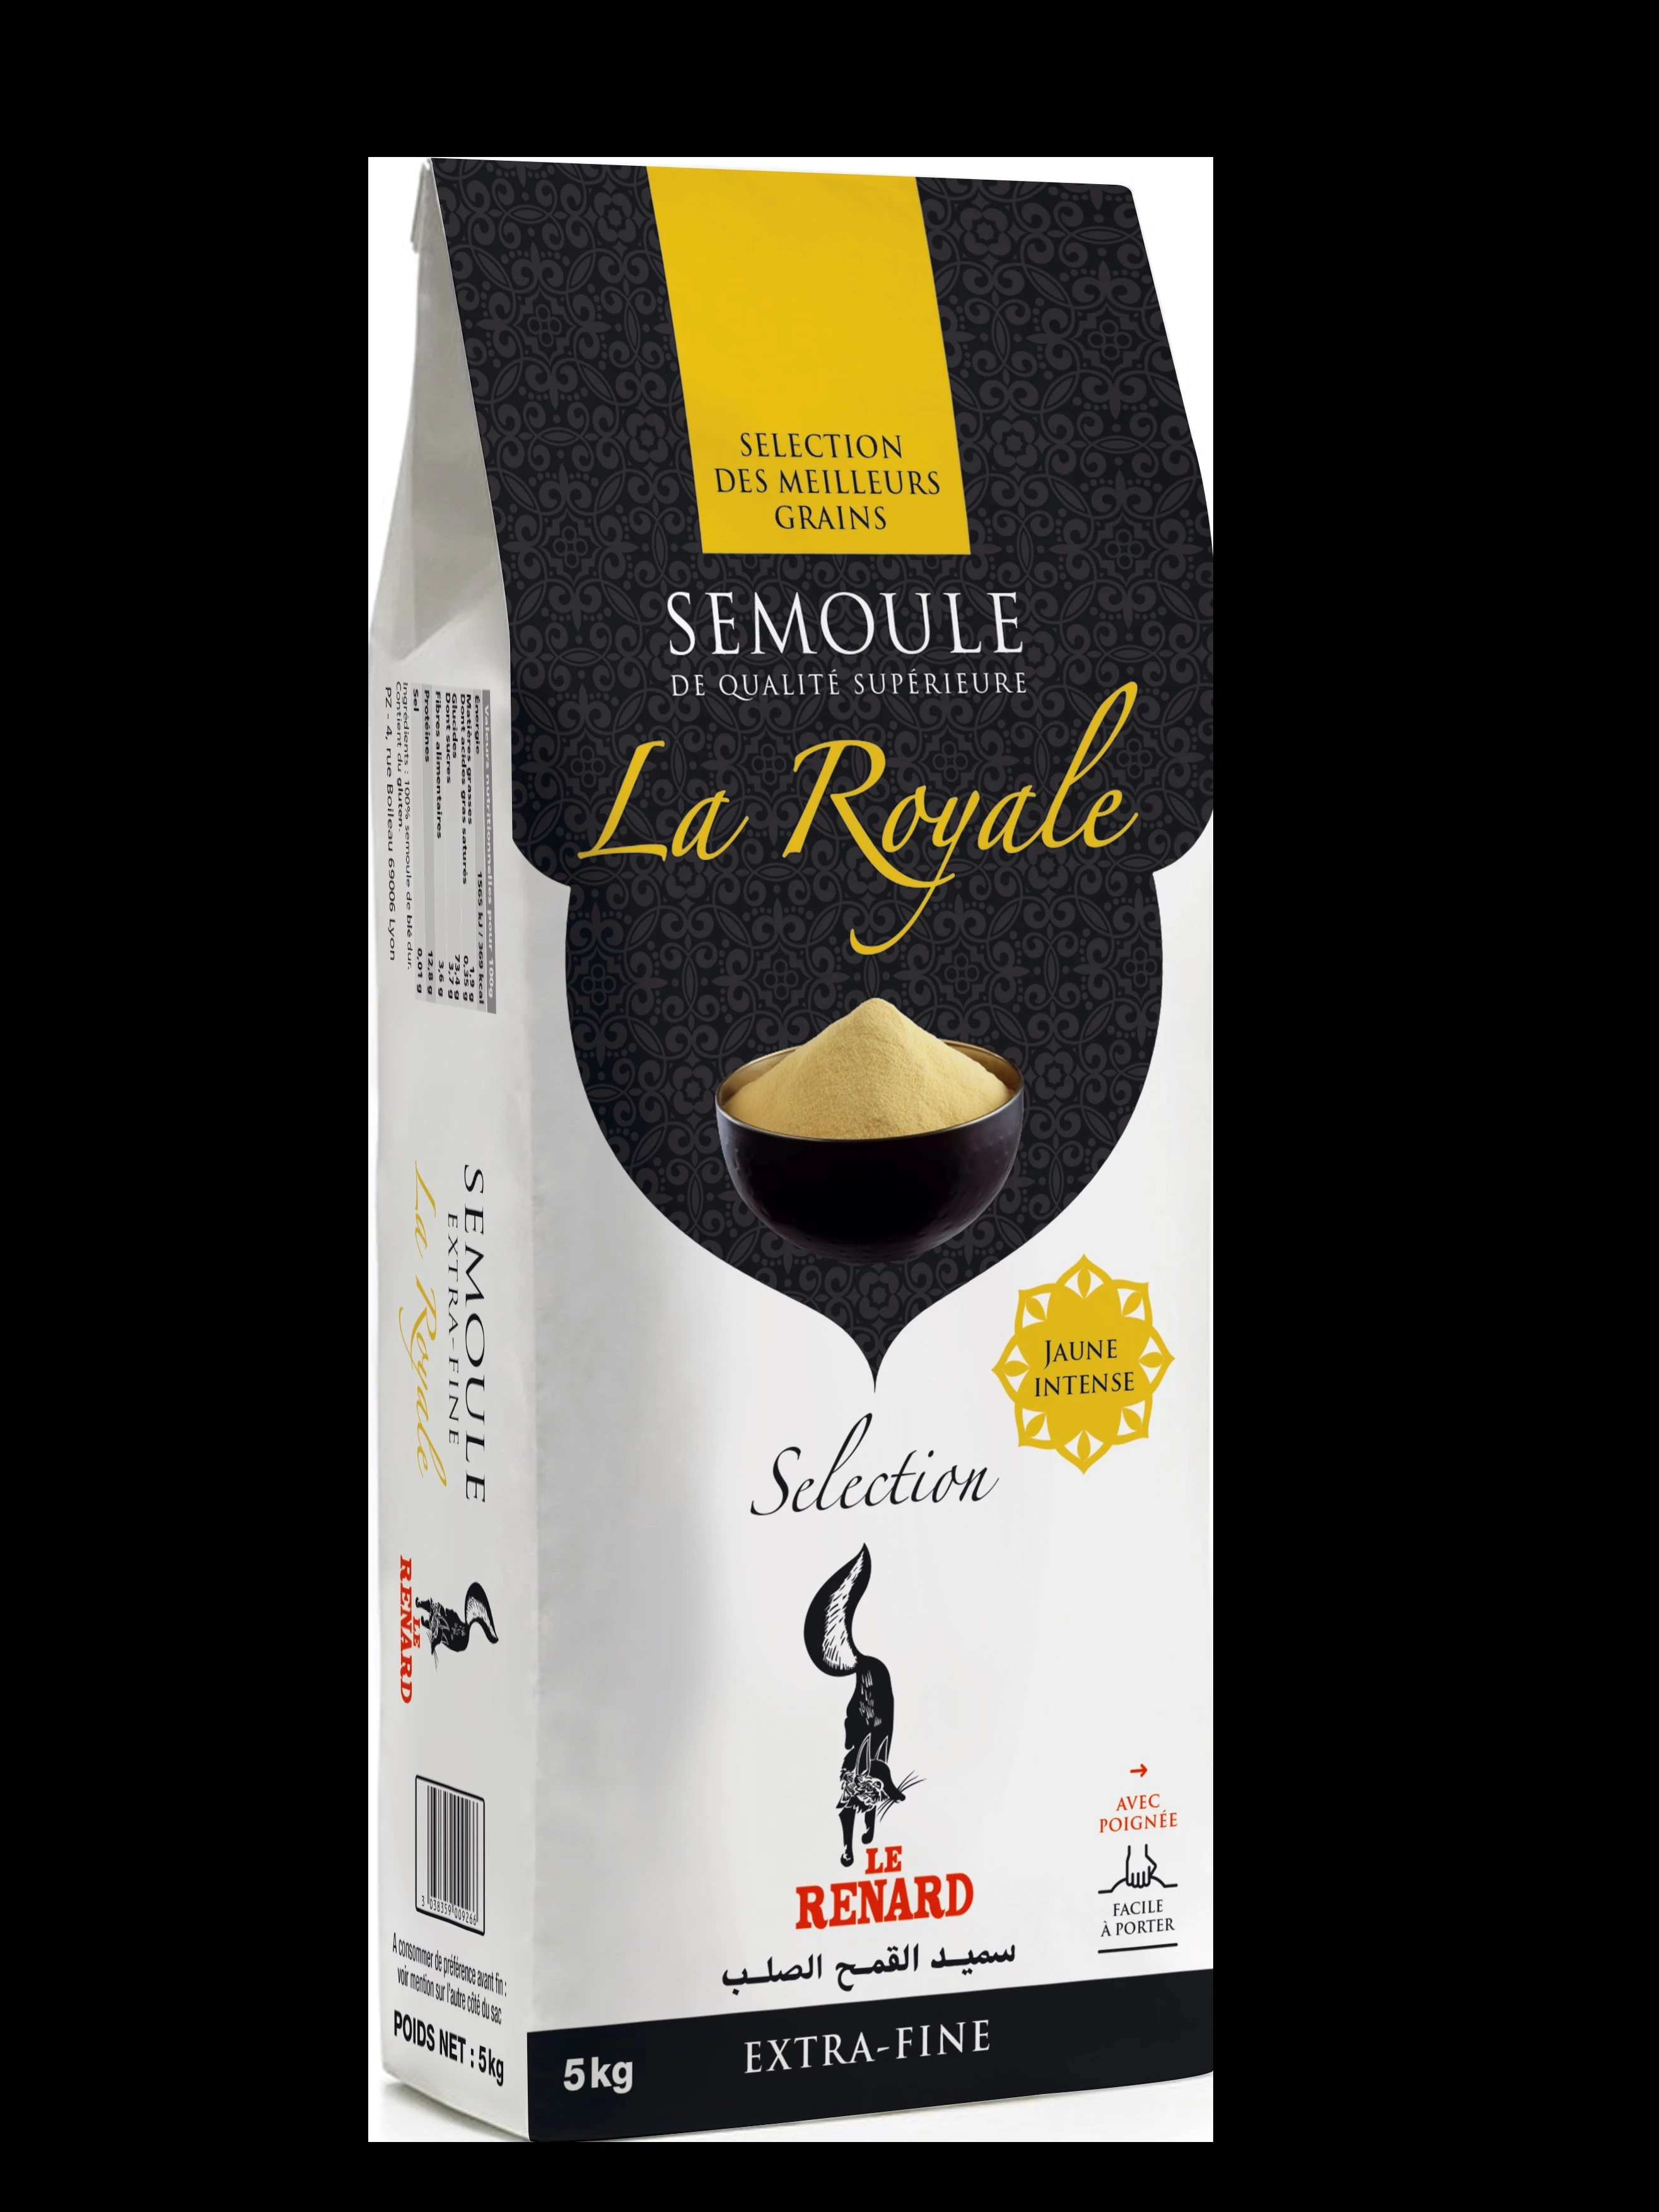 Extra Fine Royale Semolina 5kg - LE RENARD